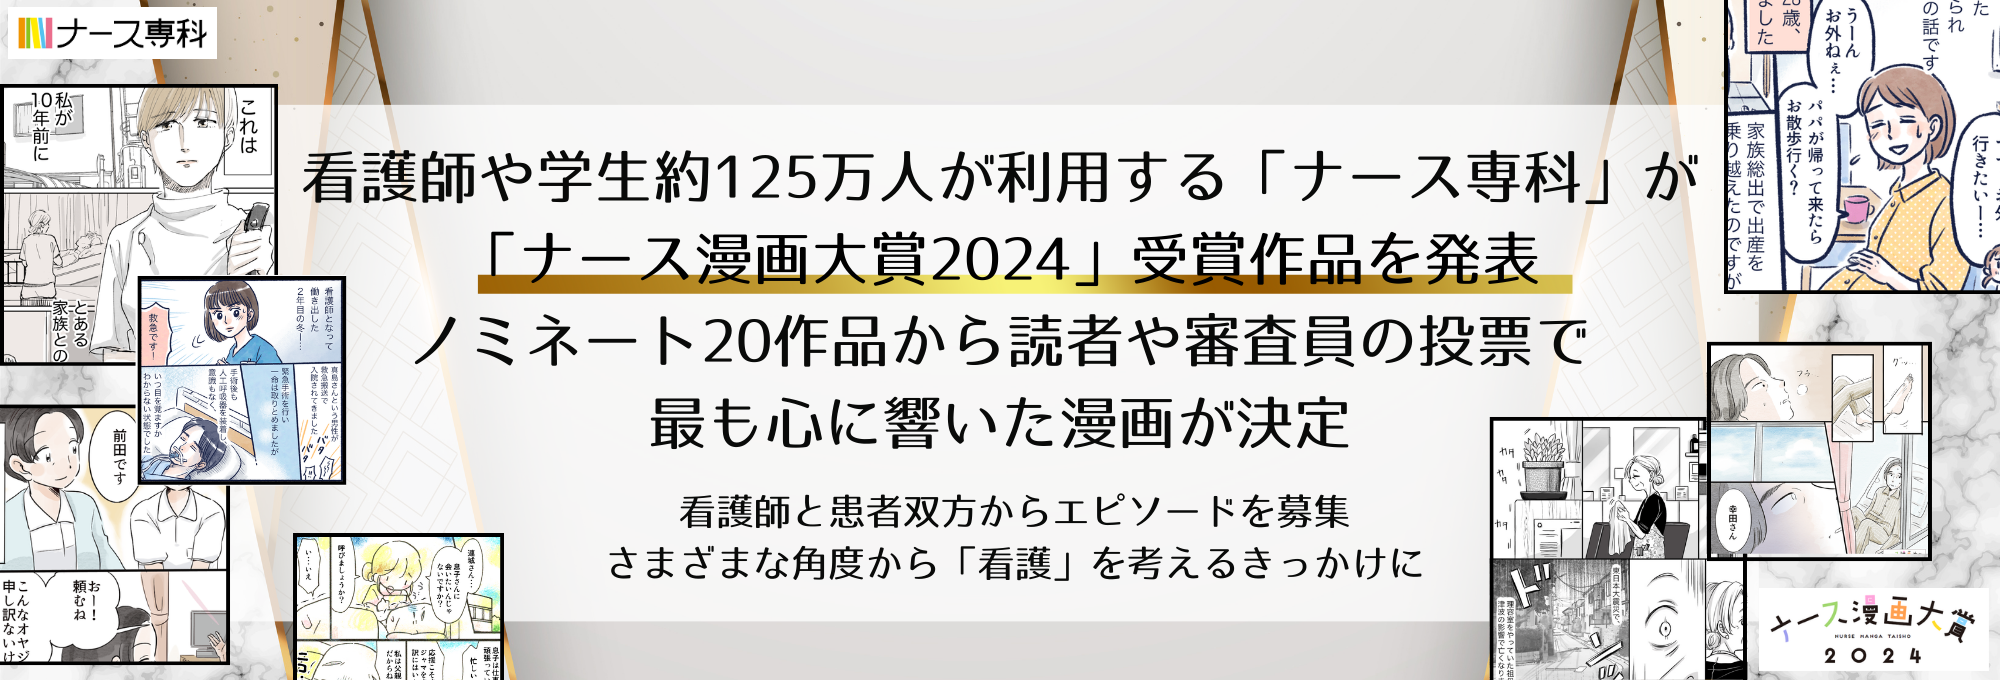 ナース漫画大賞2024発表